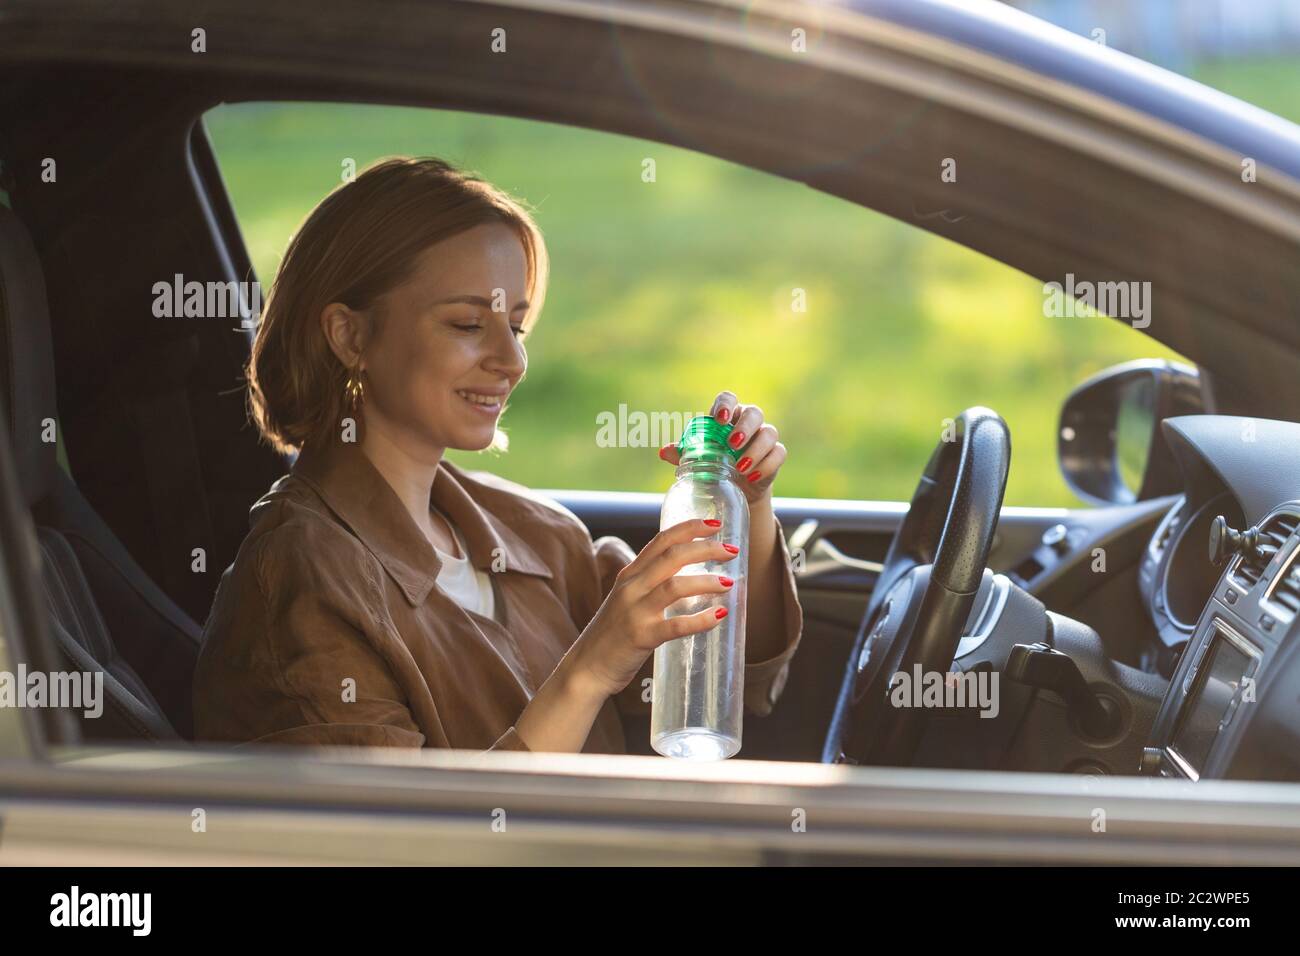 Die Fahrerin trinkt Wasser aus einer nachfüllbaren Flasche in ihrem Auto, durstig hinter dem Steuer, blieb stehen, um sich auszuruhen. Stockfoto